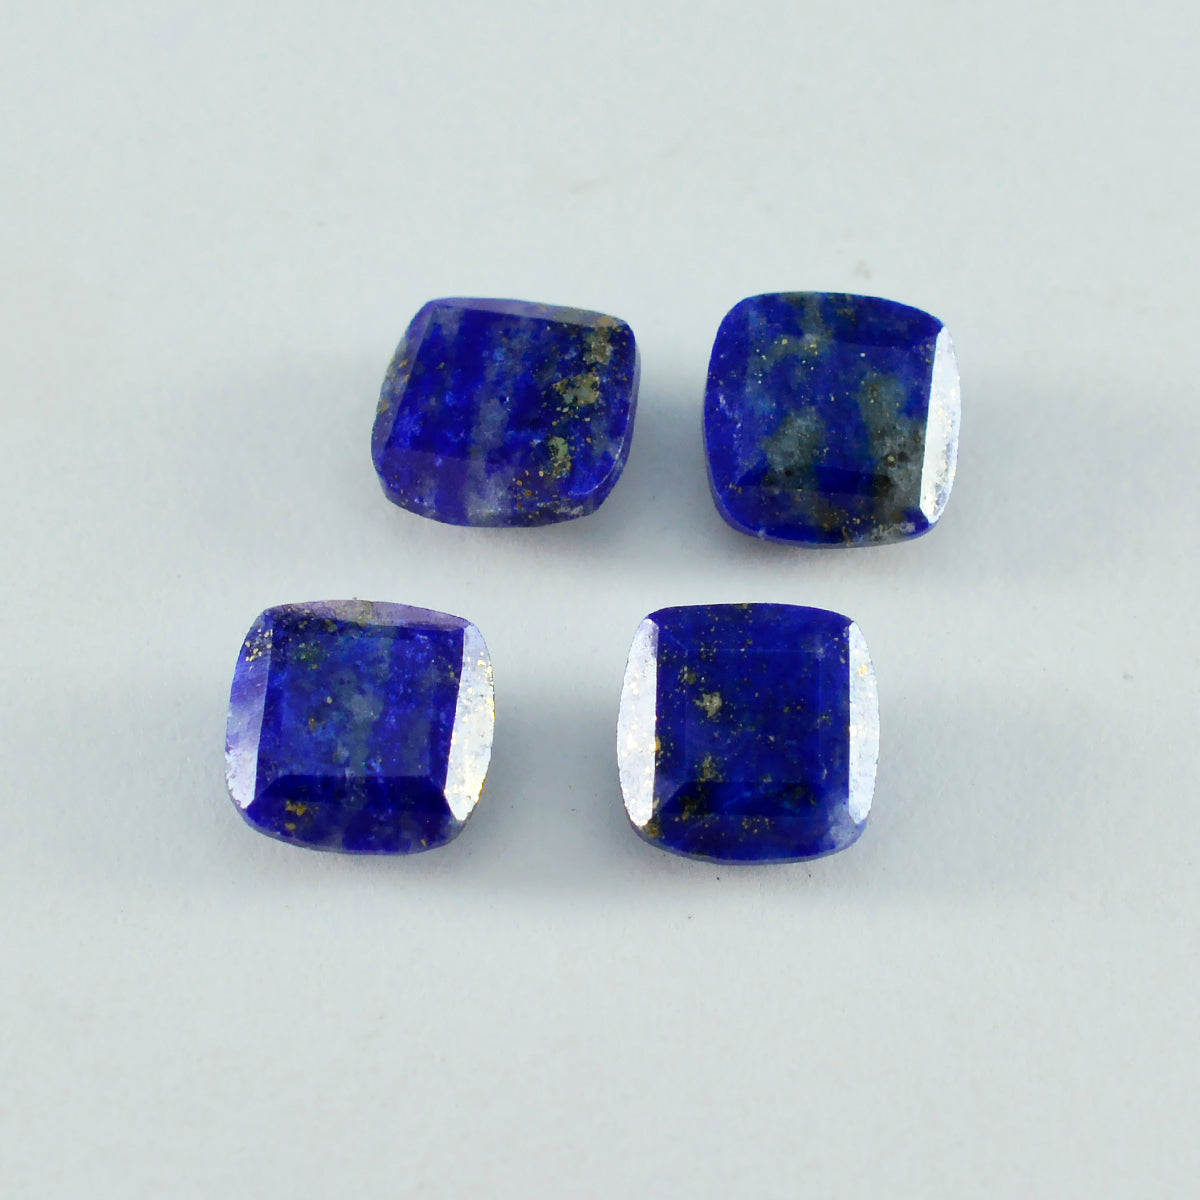 Riyogems, 1 pieza, lapislázuli azul auténtico facetado, 15x15mm, forma de cojín, piedra preciosa suelta de buena calidad